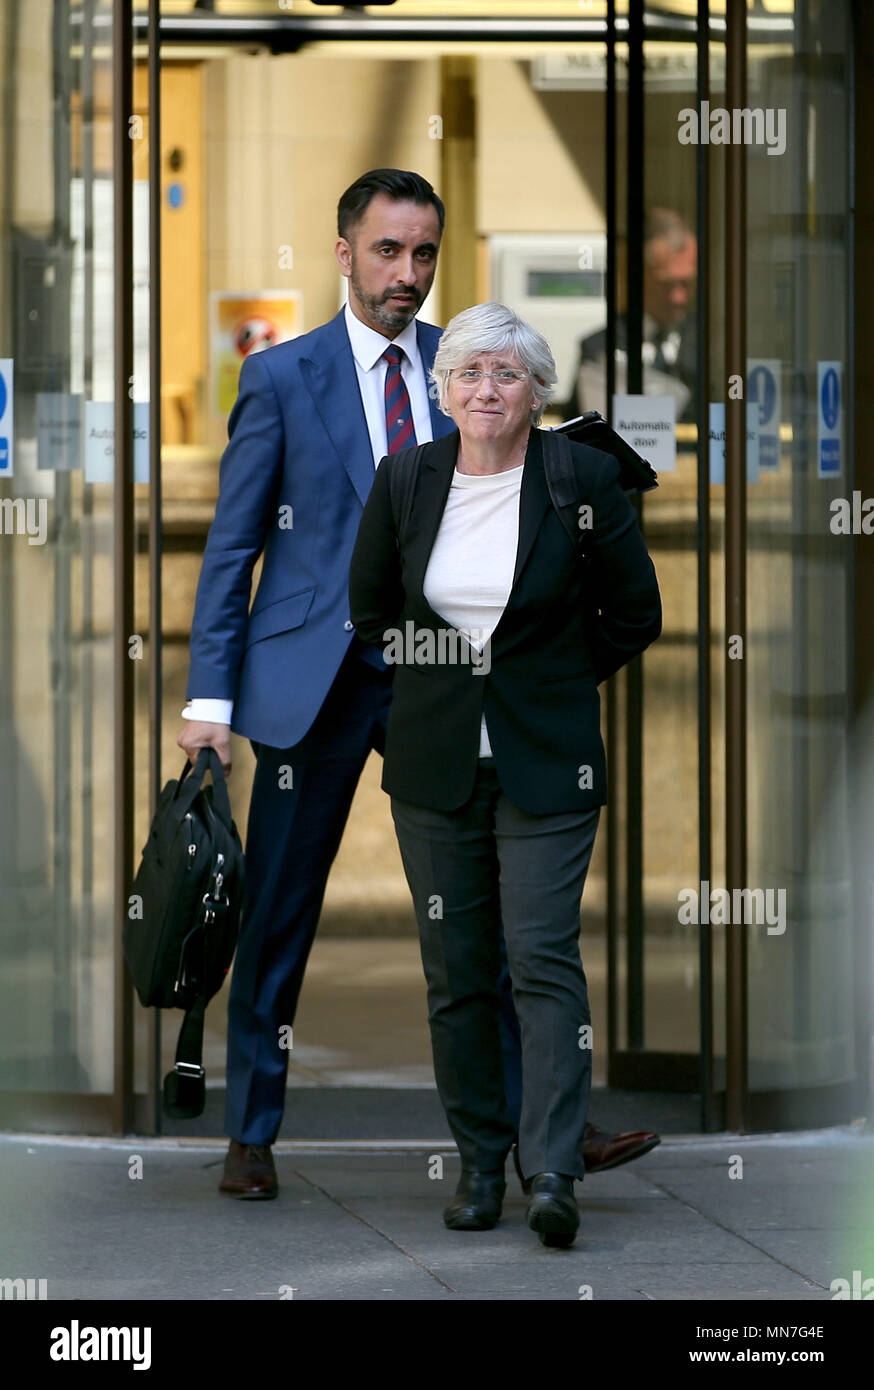 Clara Ponsati et son avocat Aamer Anwar quitter Edimbourg Sheriff après son audience préliminaire. Mme Ponsati, l'ancien ministre de l'éducation catalan, est la lutte contre l'extradition vers l'Espagne. Banque D'Images